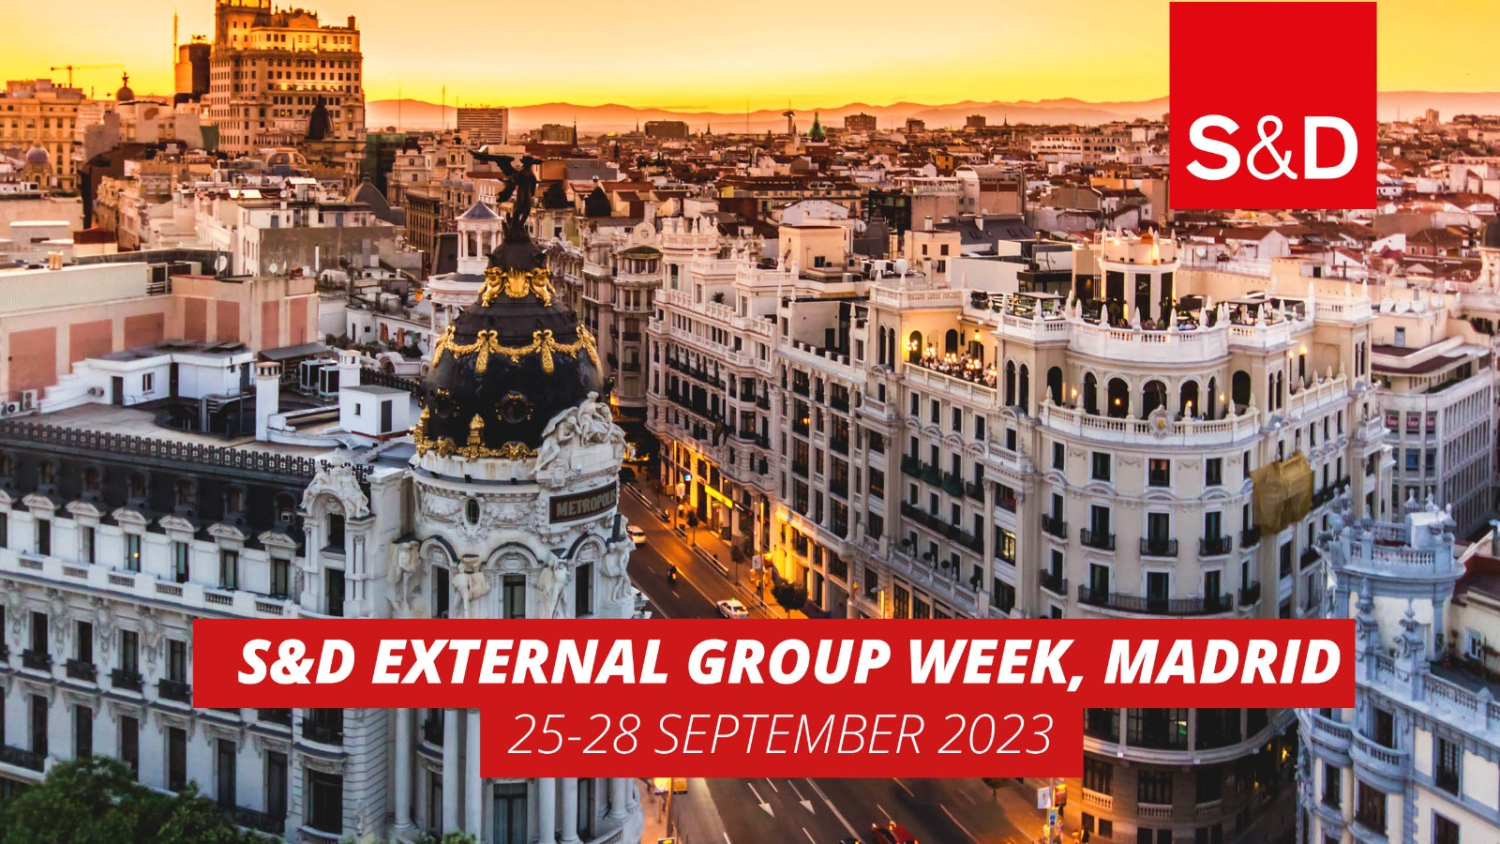 S&D external group week Madrid 2023